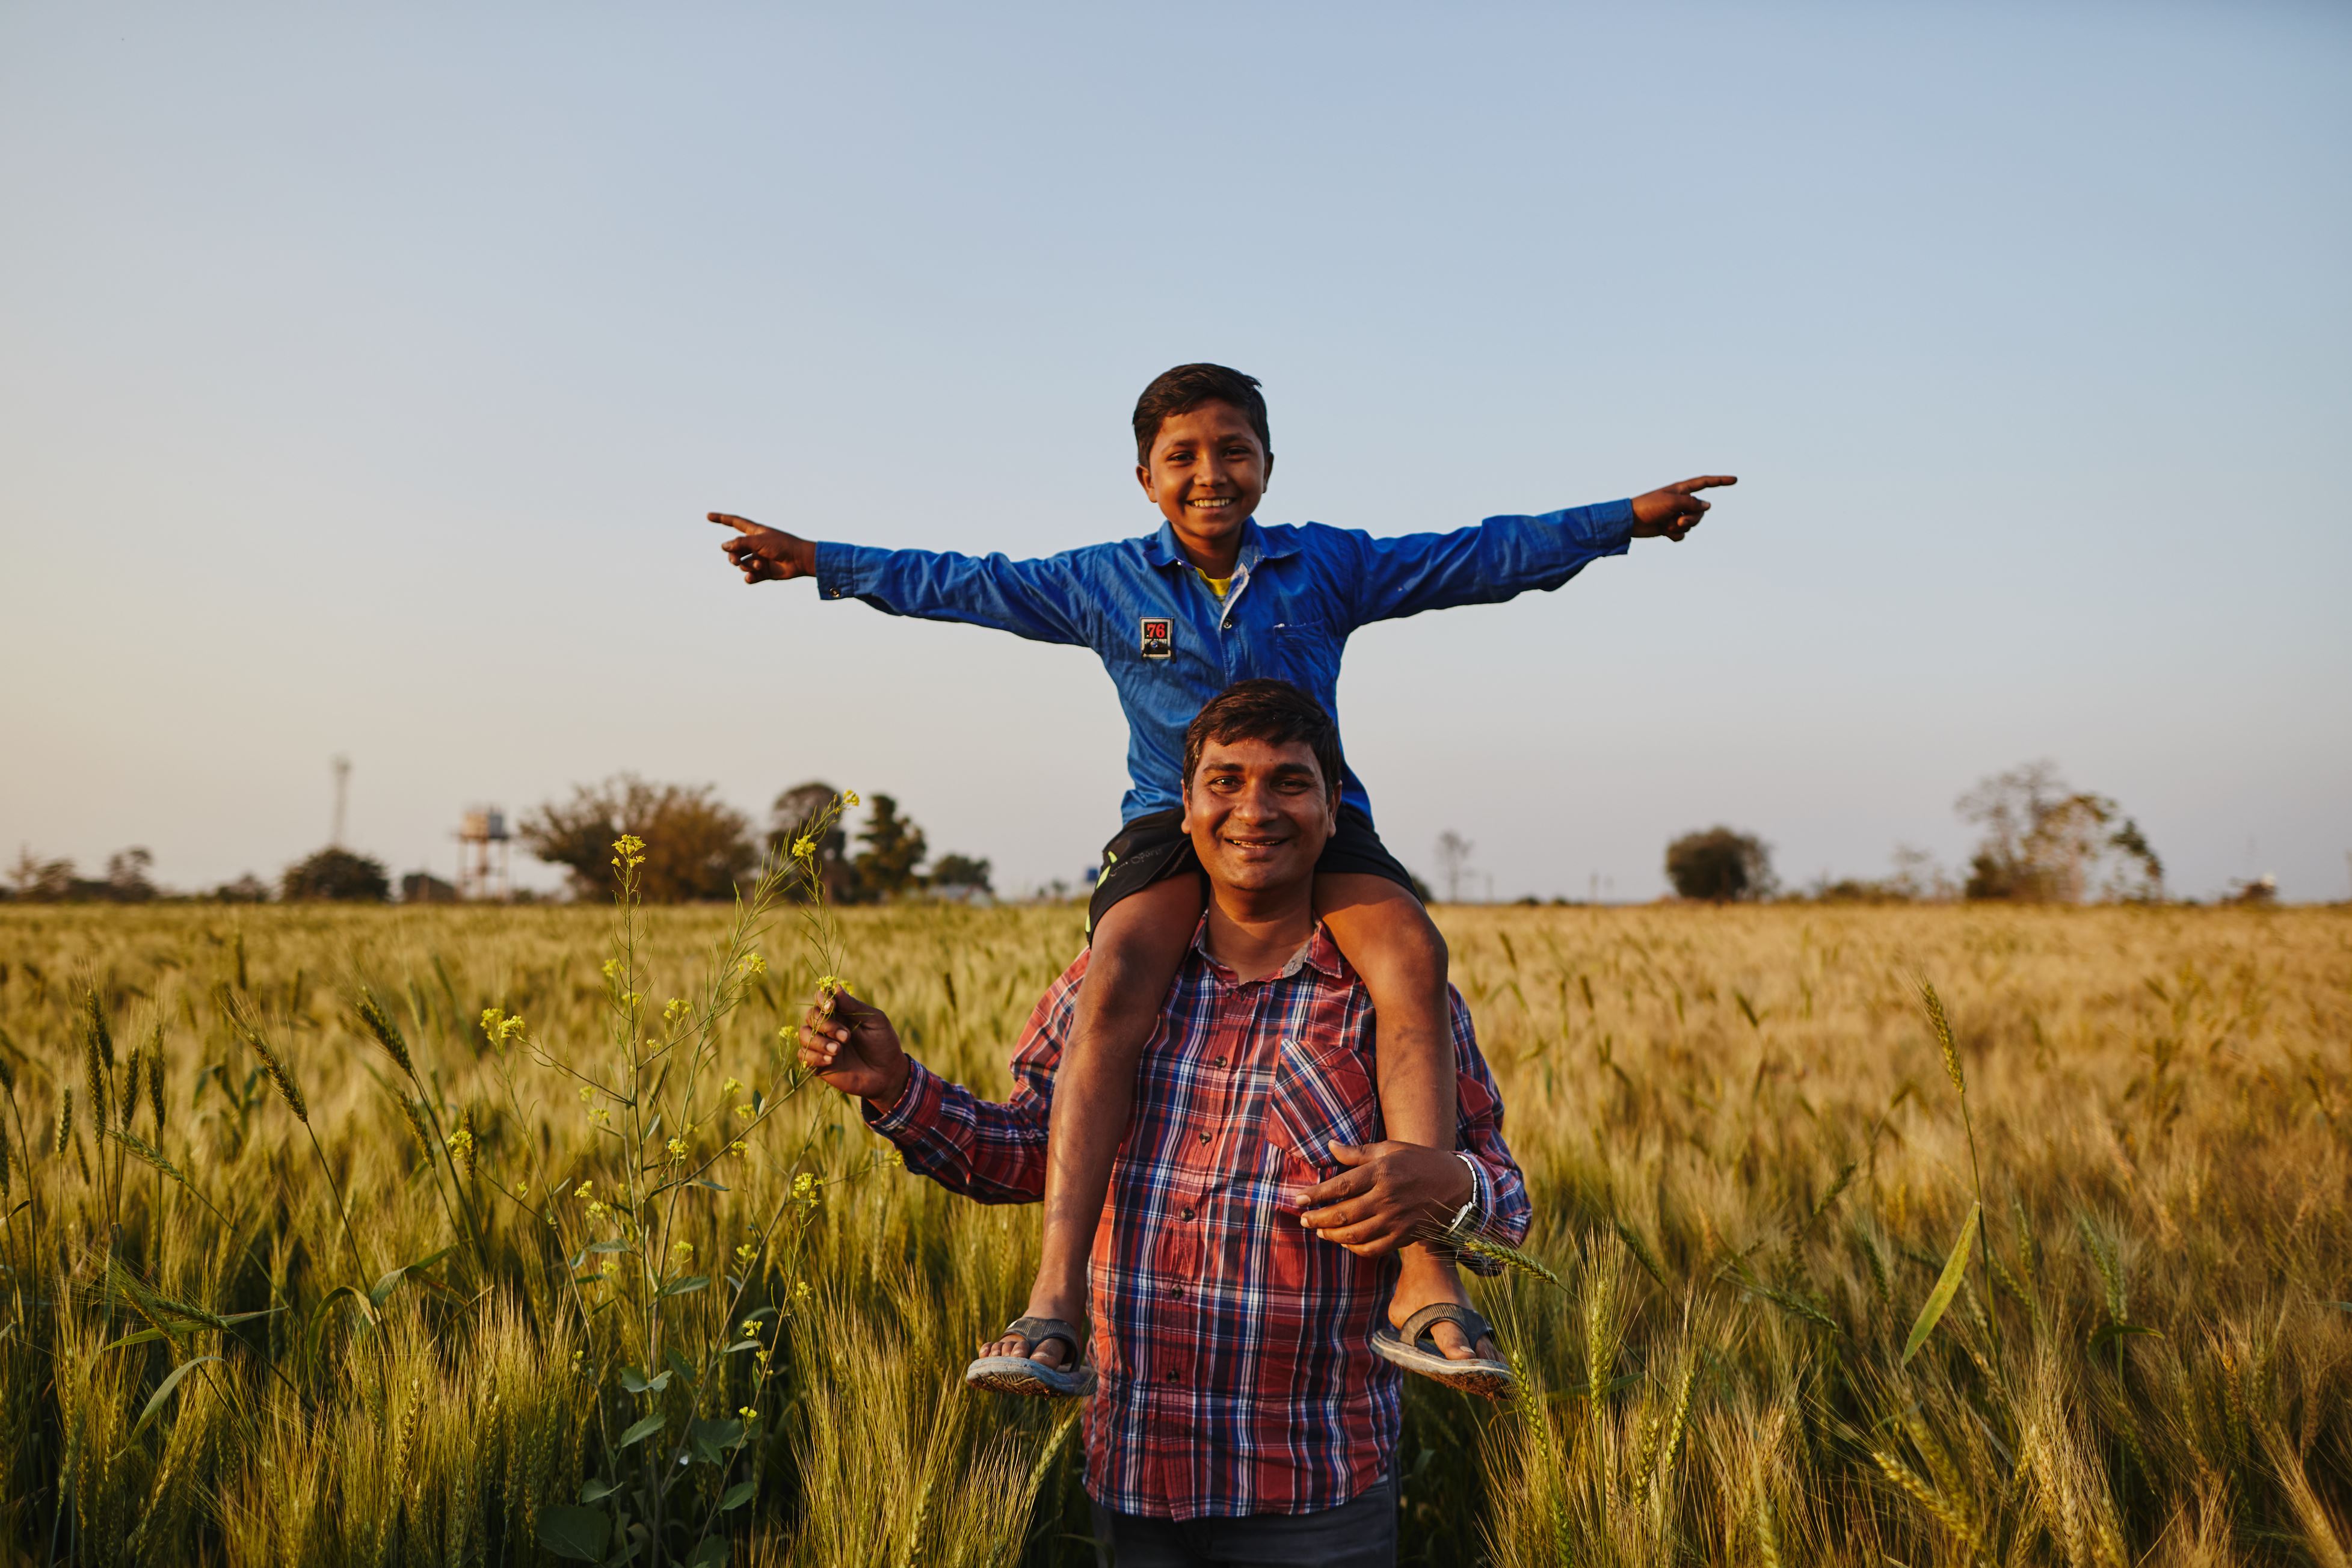 Bambino sostenuto a distanza sulle spalle del padre. Sorridono in un campo di grano. 